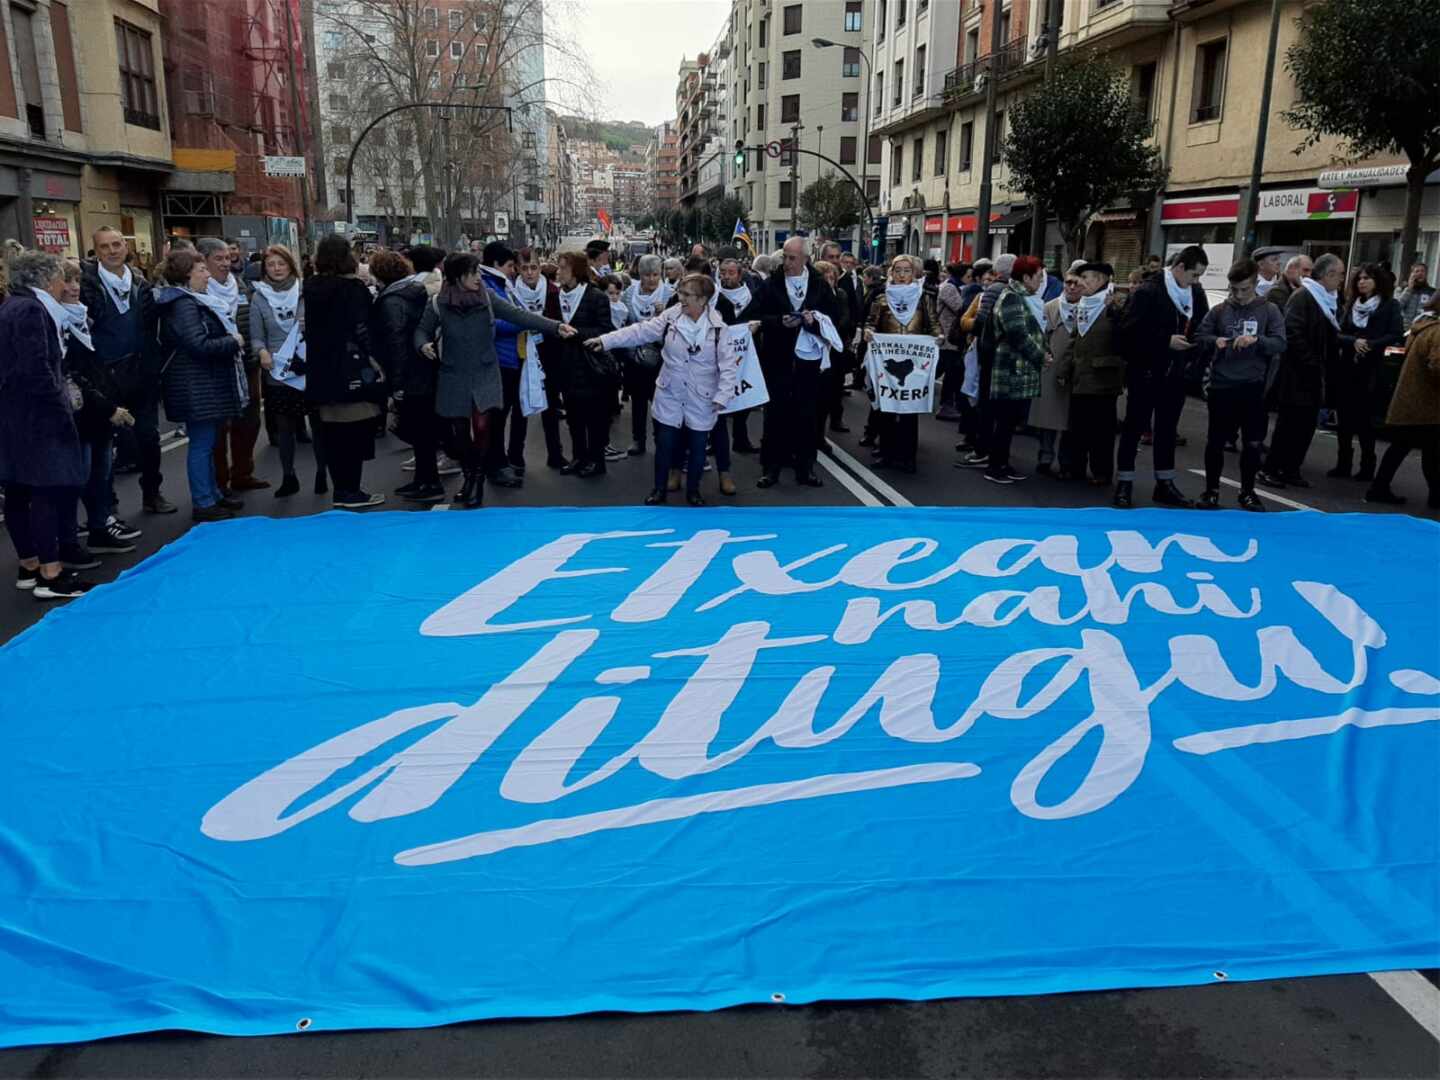 Etxerat reclama el traslado a Euskadi de los 85 etarras presos "en la periferia de Euskal Herria"